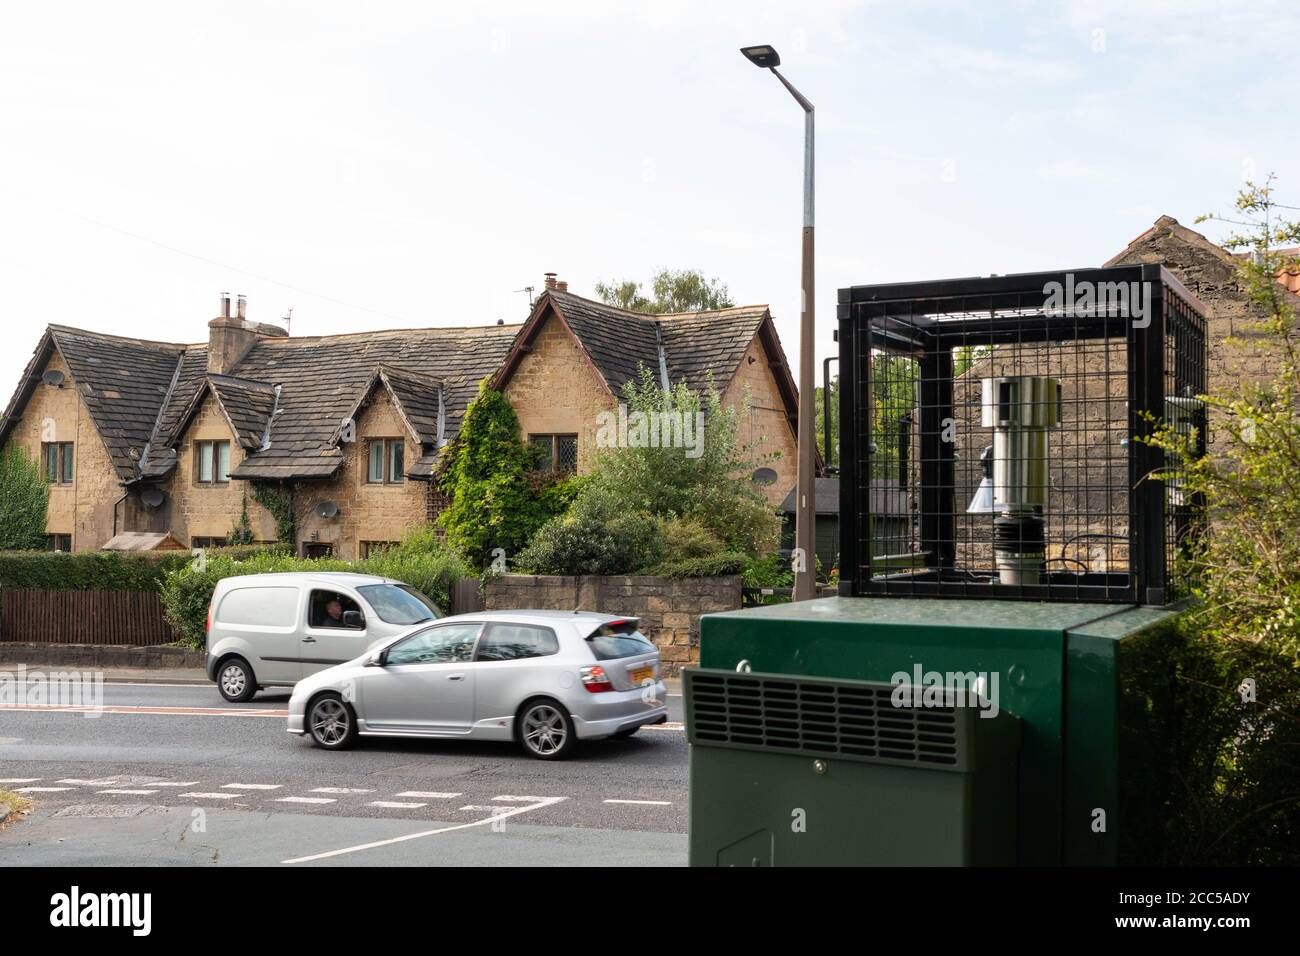 Surveillance de la qualité de l'air au village de Hickleton, équipement de surveillance du dioxyde d'azote à l'intérieur de la boîte verte Barnsley Road, Doncaster, South Yorkshire, Angleterre Banque D'Images